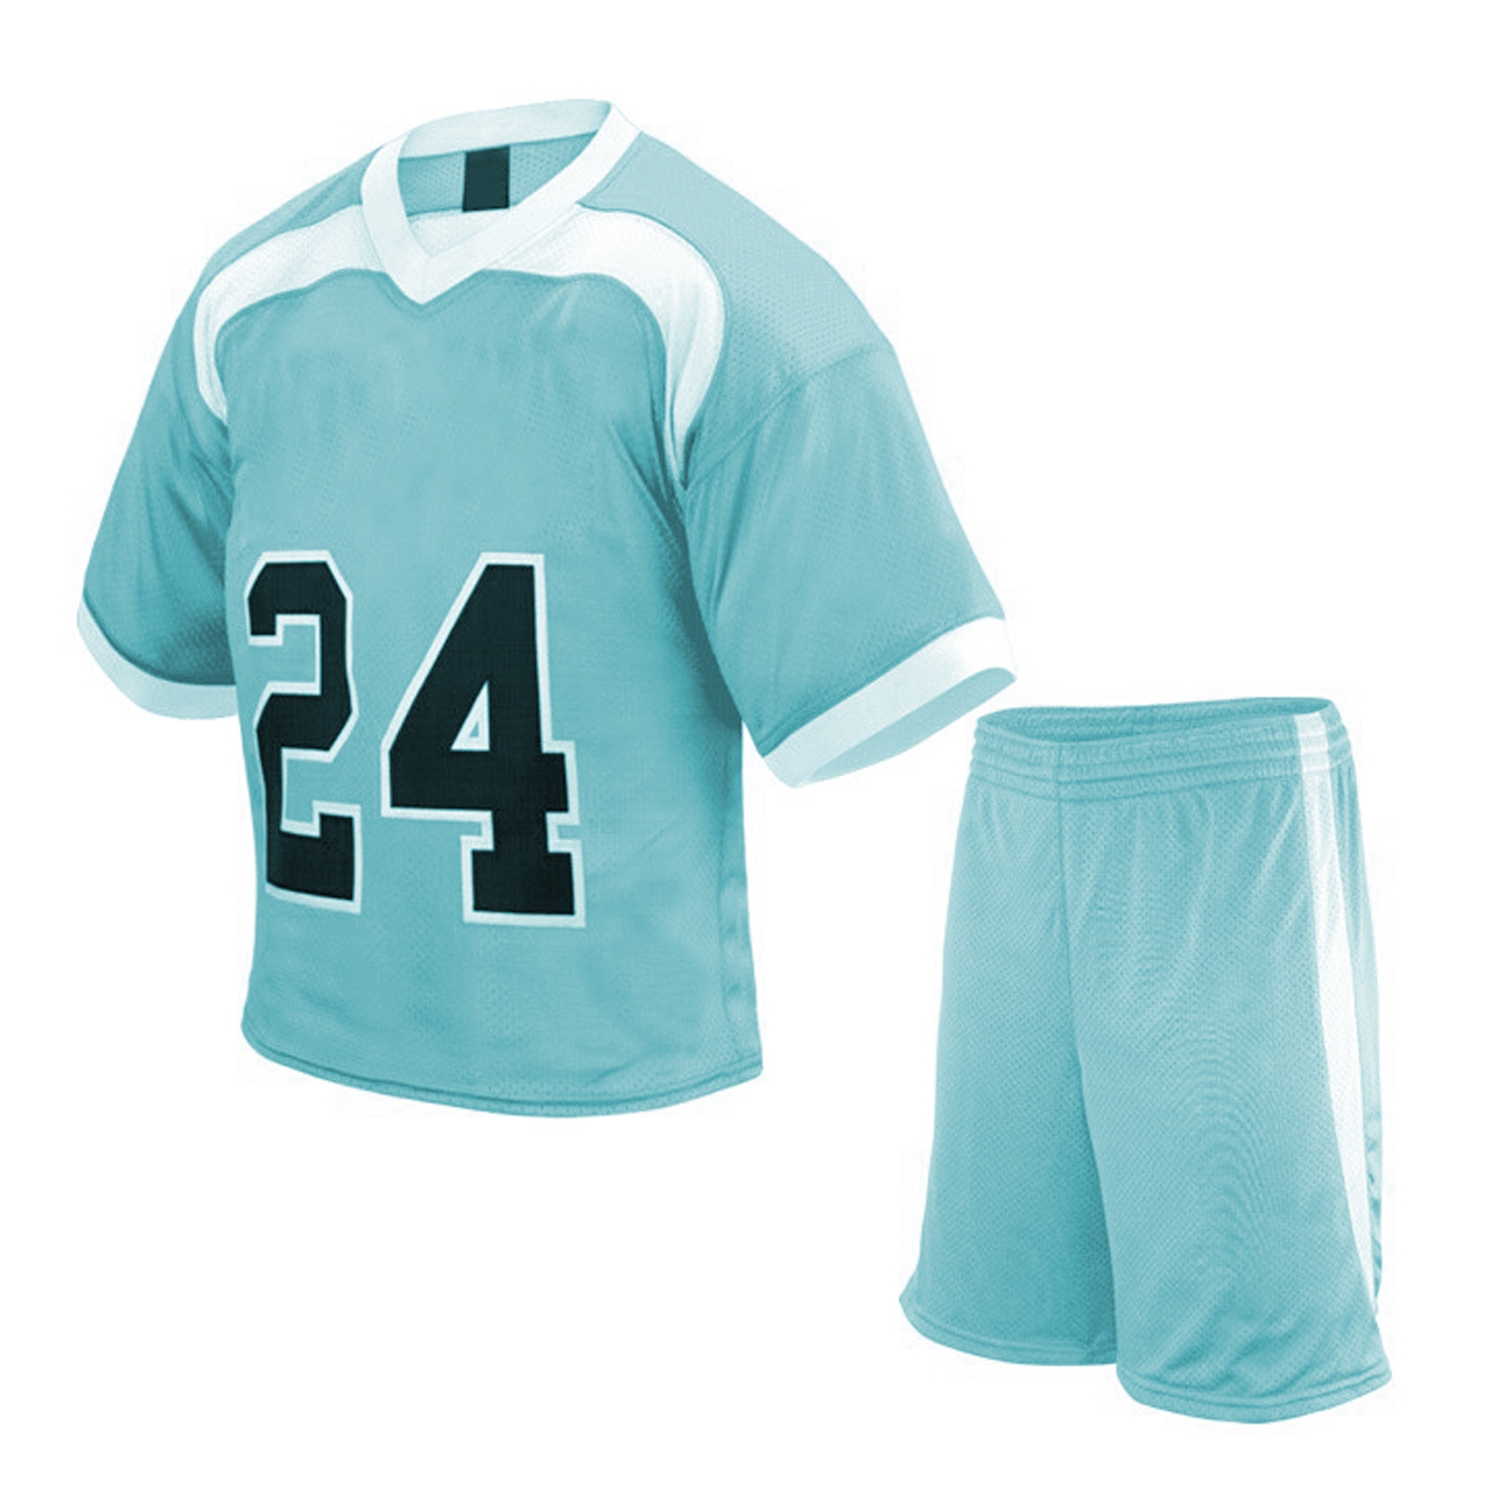 Sublimated Lacrosse Uniform